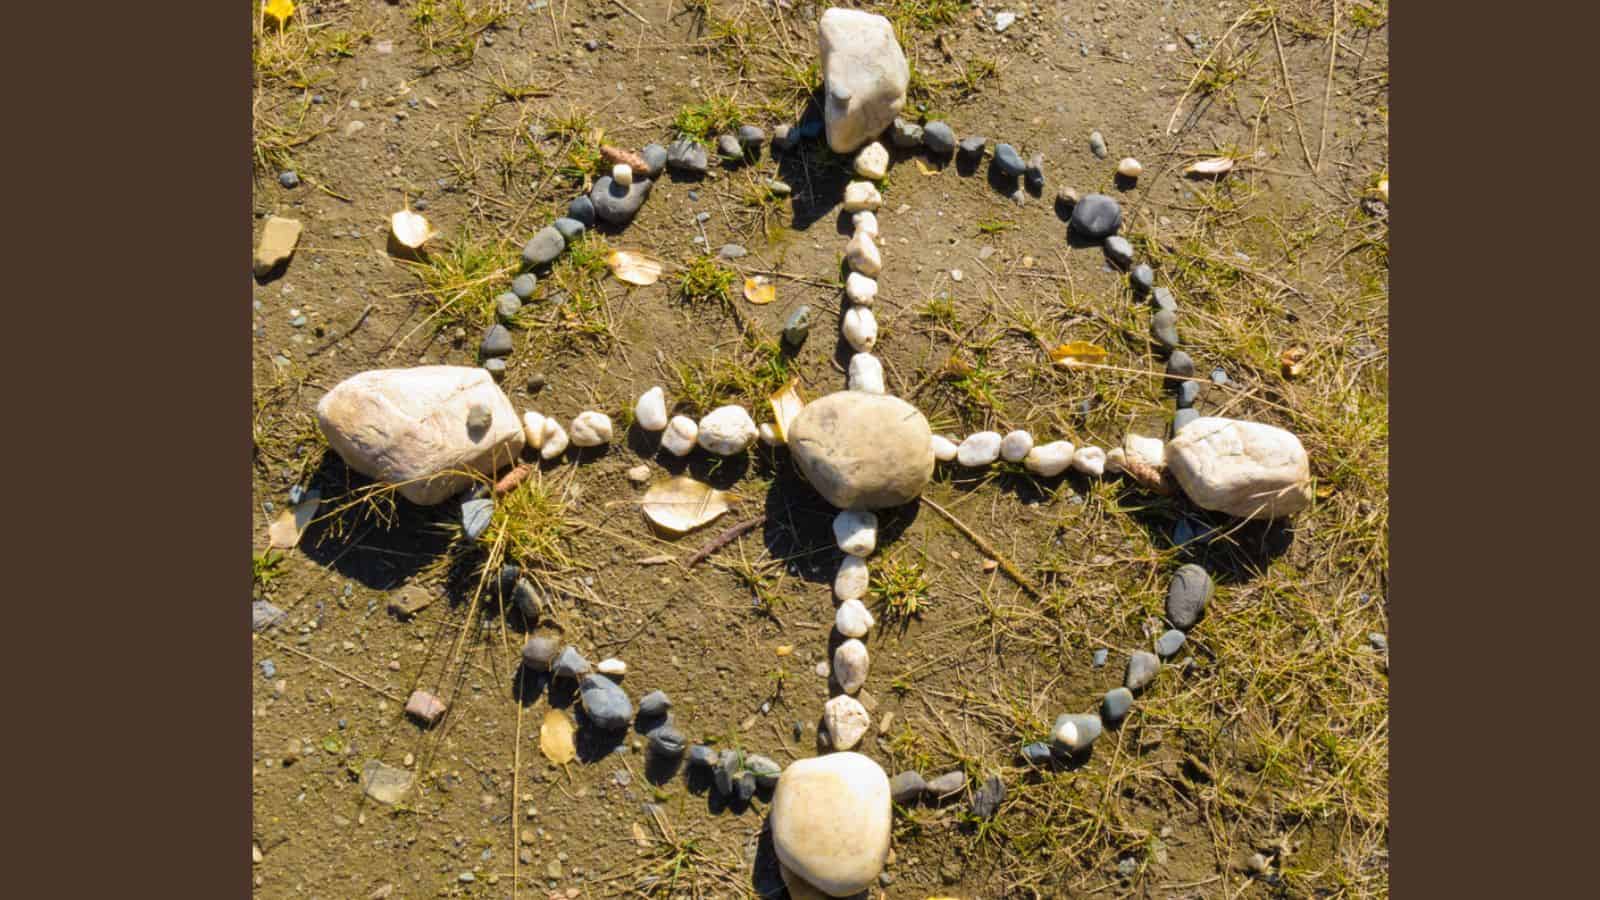 Native American Medicine Wheel or Sacred Hoop